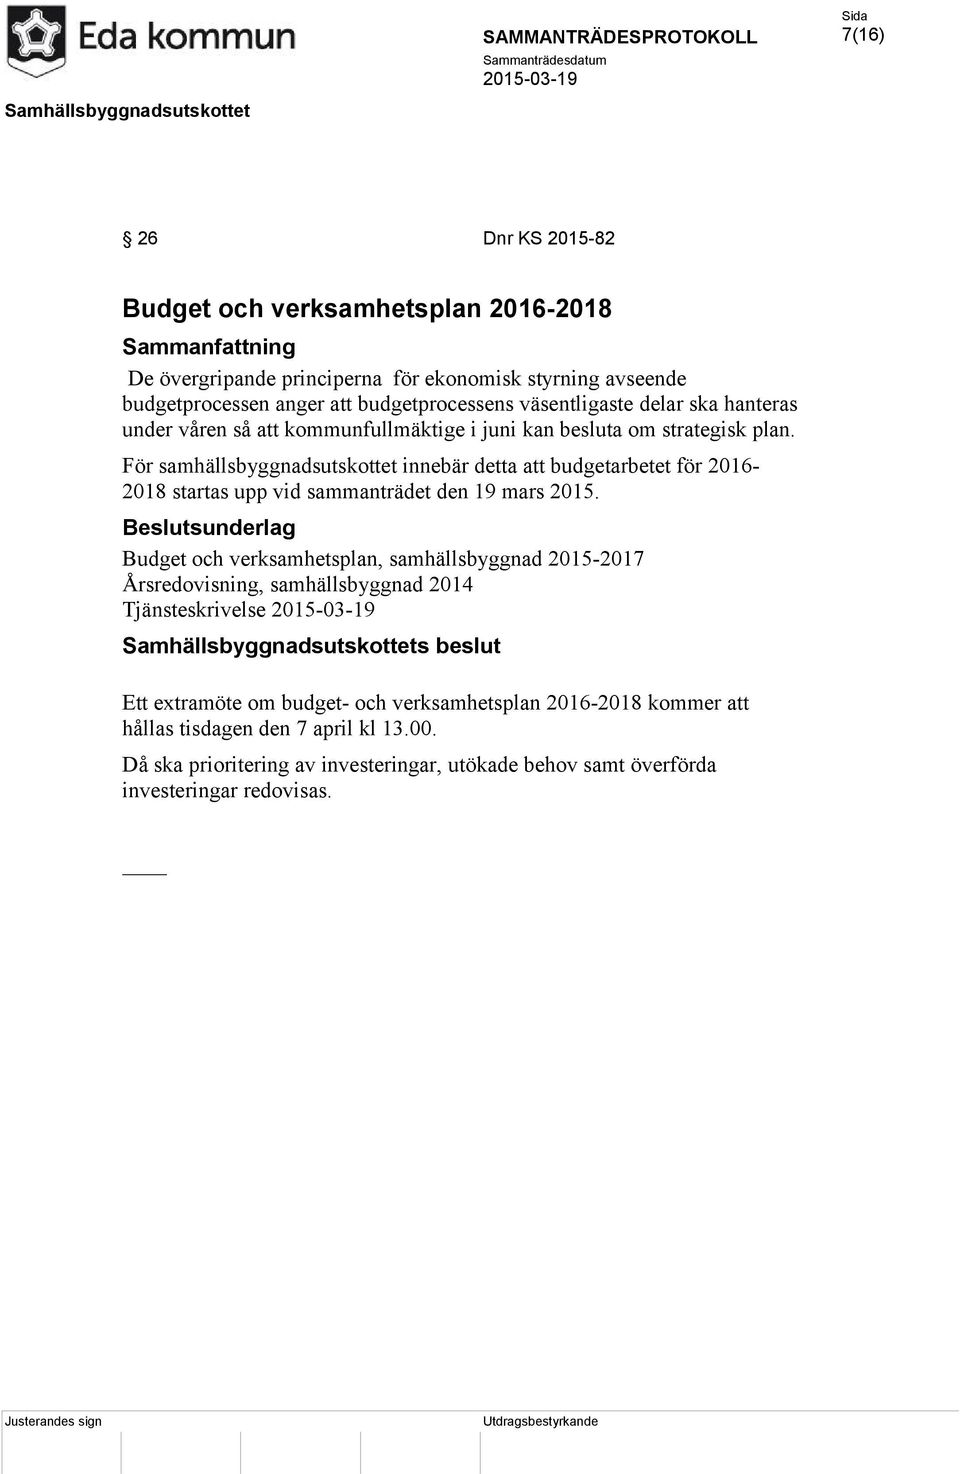 För samhällsbyggnadsutskottet innebär detta att budgetarbetet för 2016-2018 startas upp vid sammanträdet den 19 mars 2015.